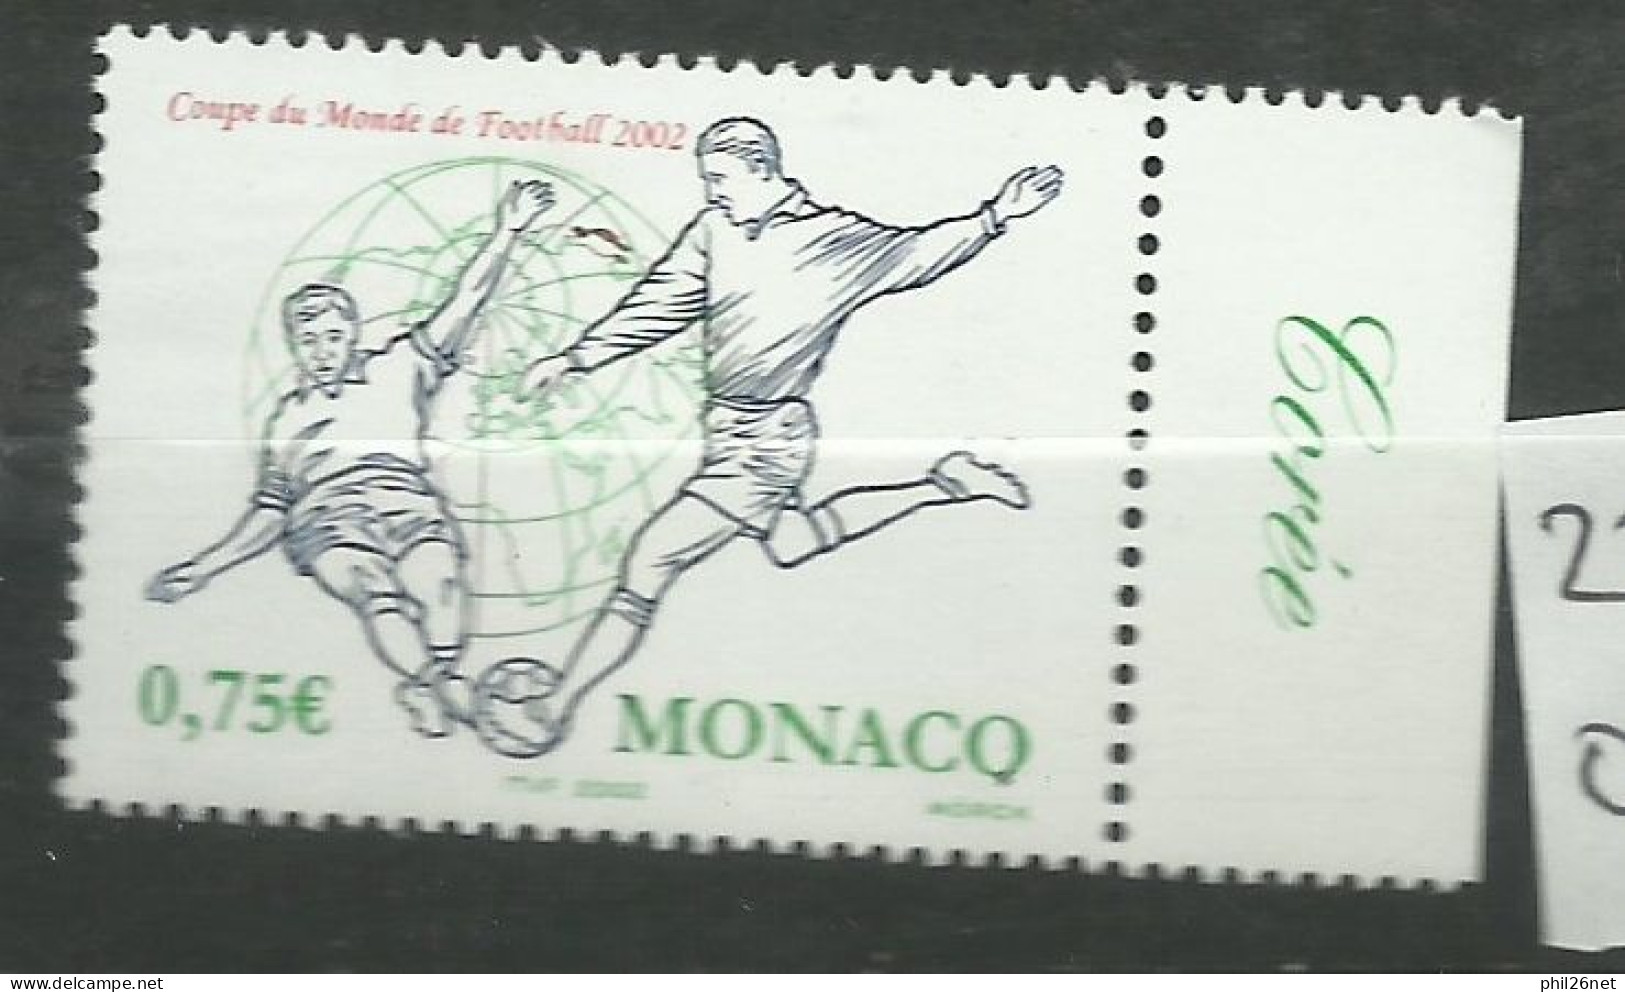 Monaco  N° 2350  Coupe Du Monde Football  2002 Corée Du Sud Et Japon   Neuf  *  *     B/TB   Voir Scans  Soldé ! ! ! - 2002 – Südkorea / Japan